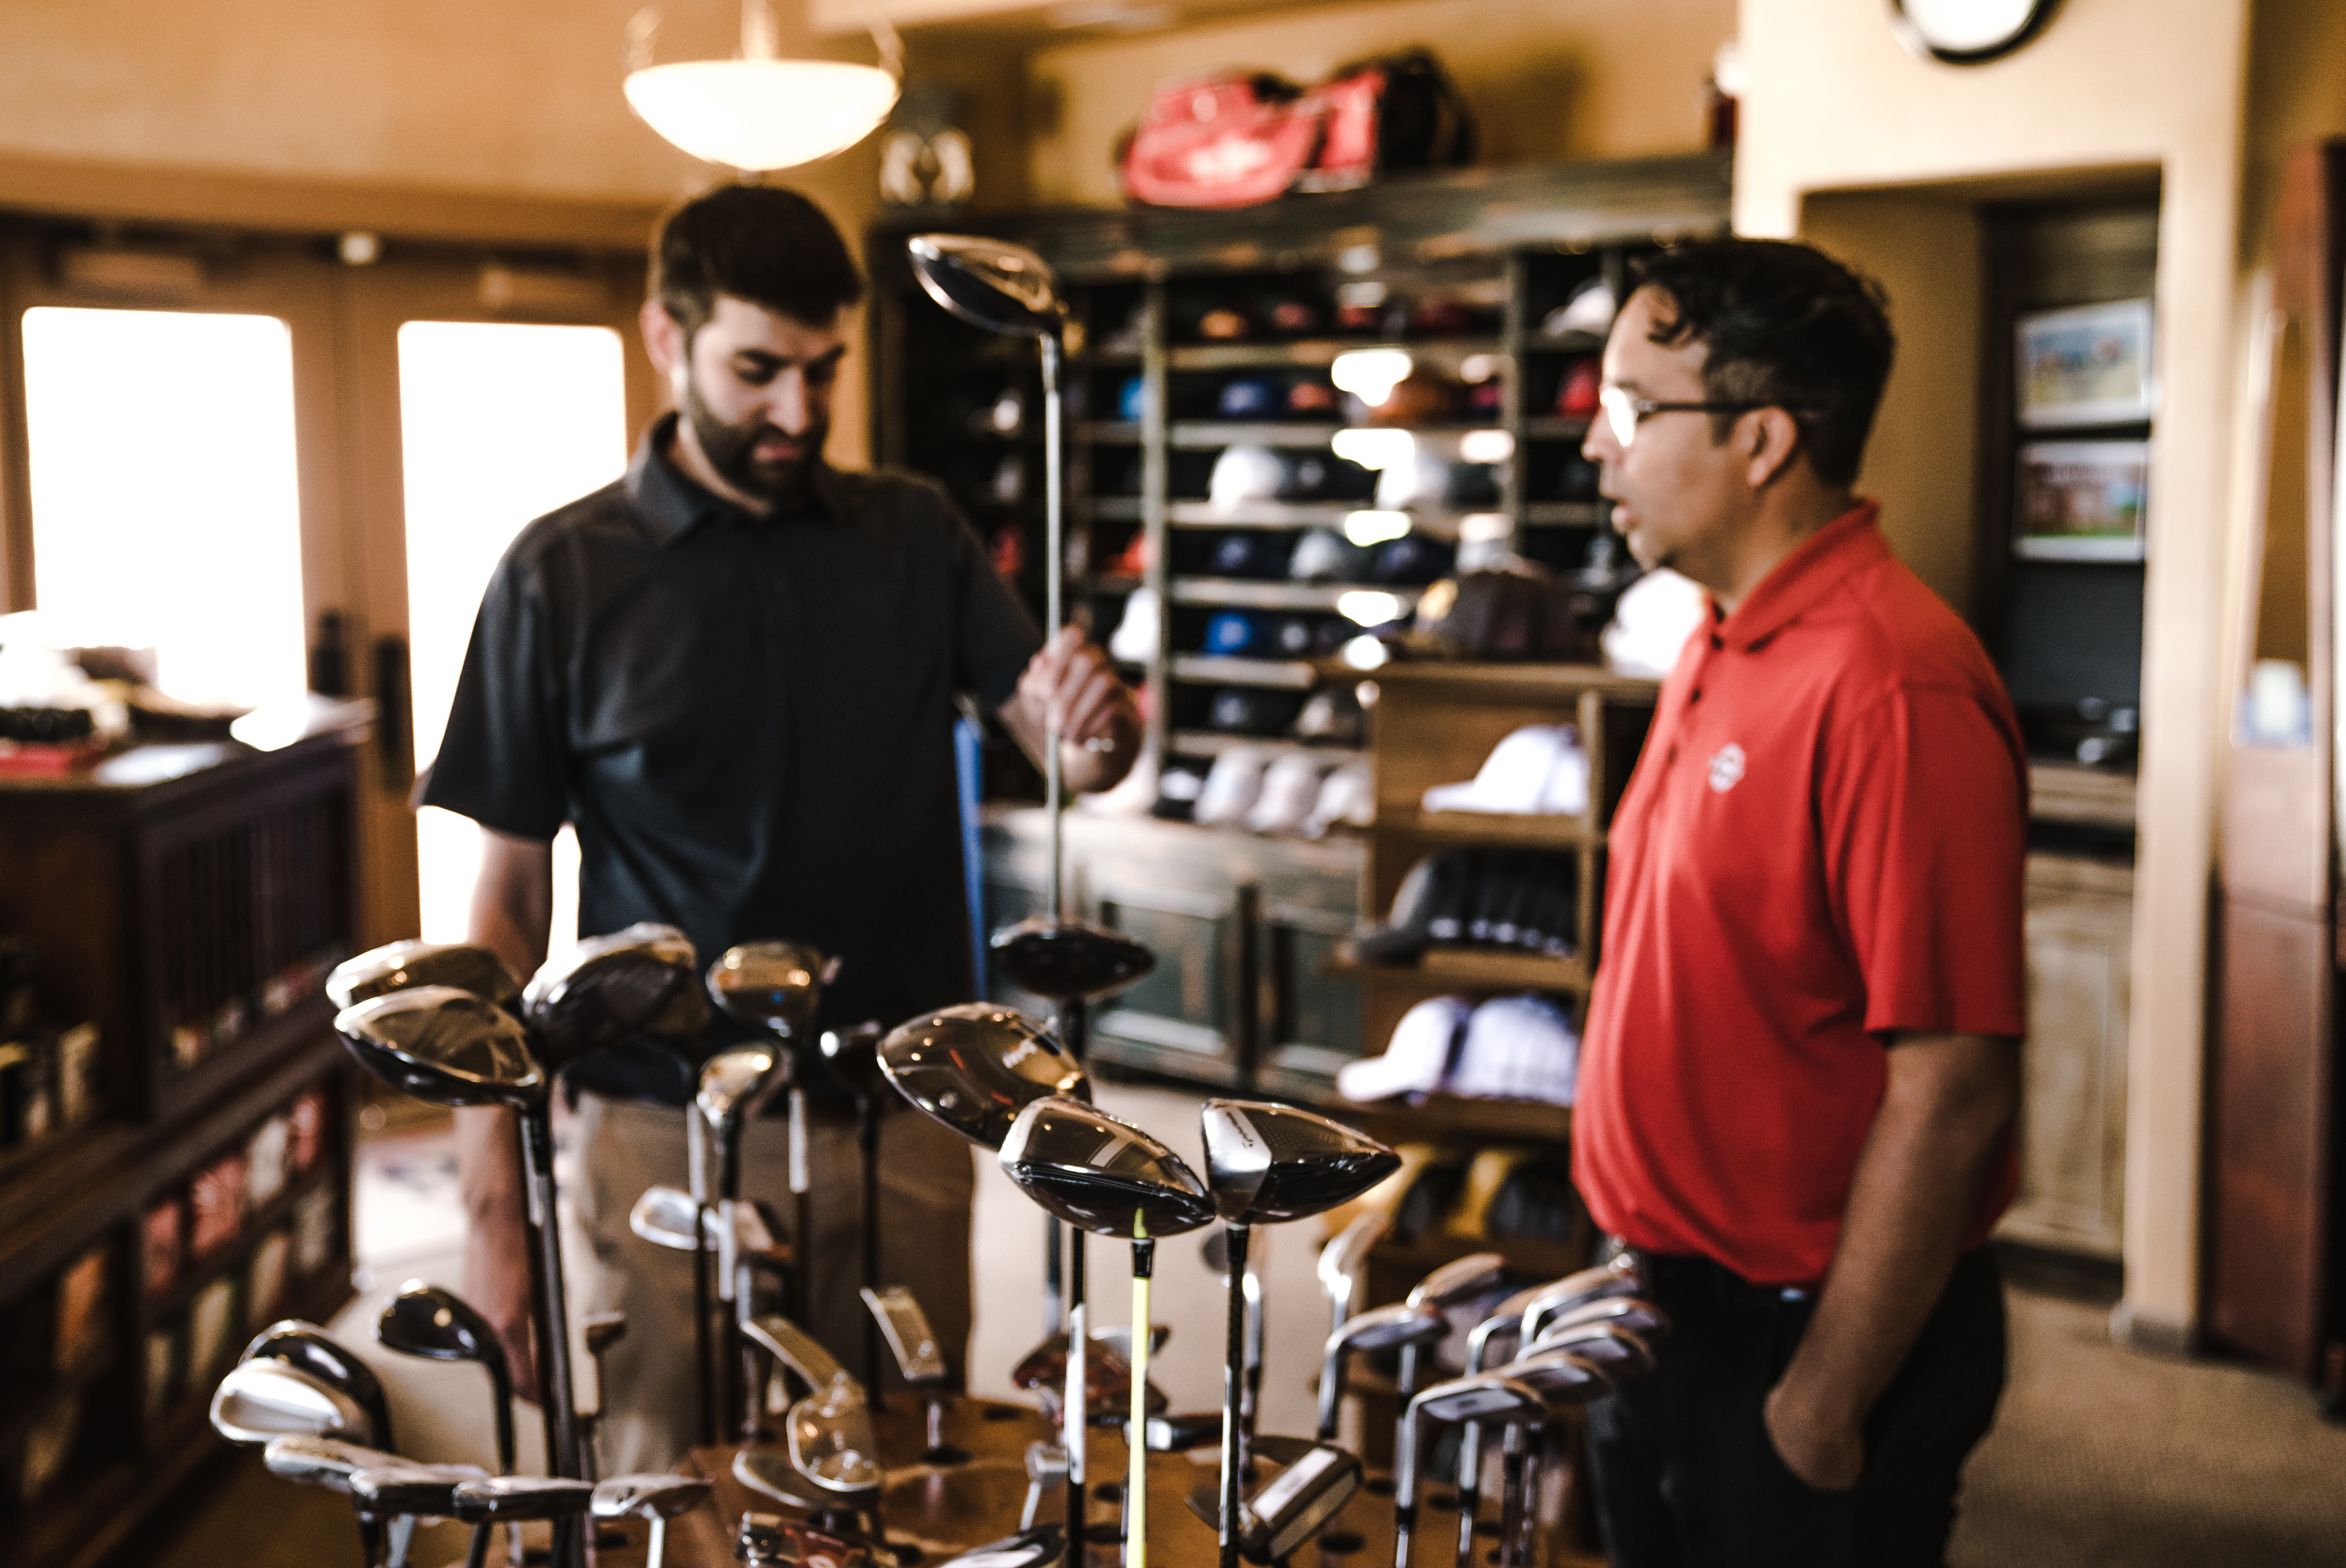 Glencoe Golf Club Pro Shop